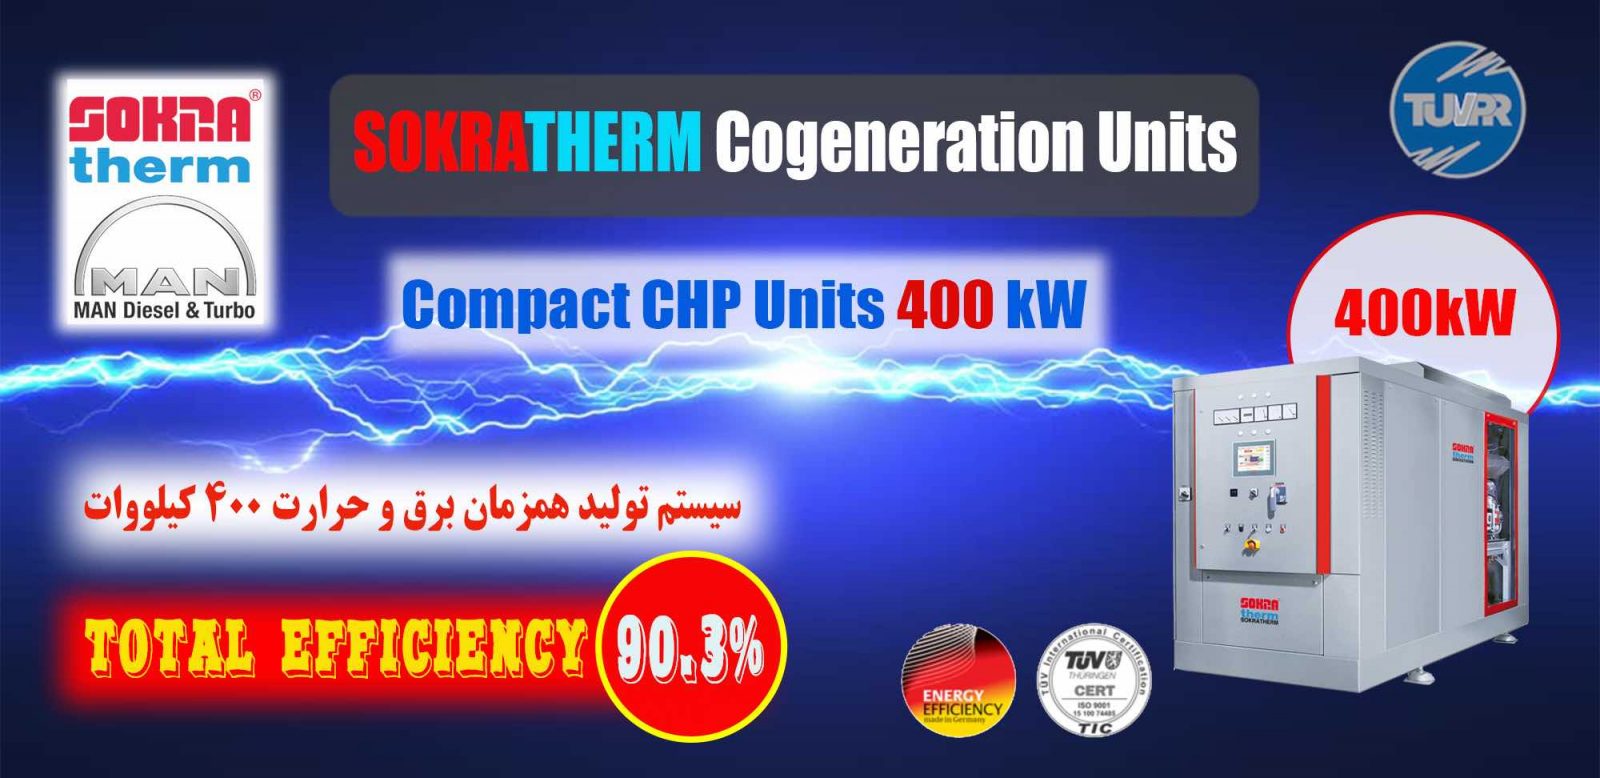 سیستم تولید همزمان برق و حرارت ۴۰۰ کیلووات آلمانی- شرکت پارس رایزن- 400 kW CHP combined head and power